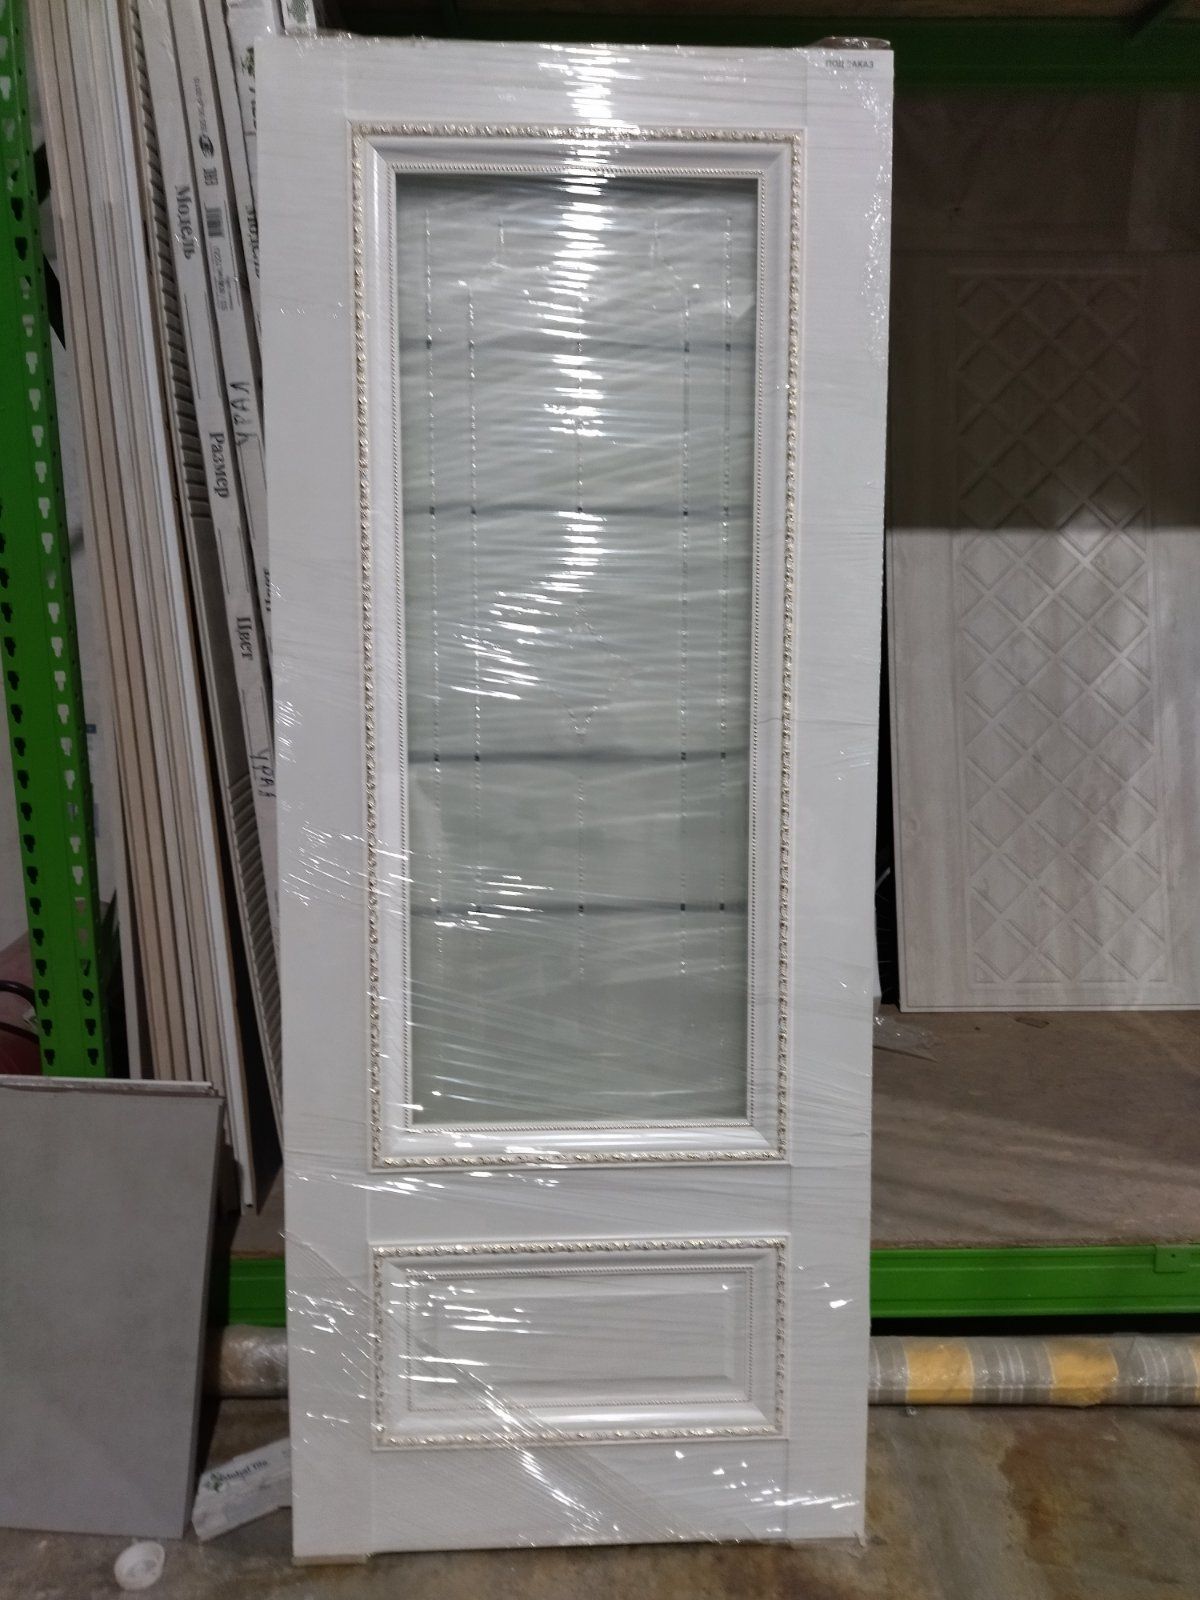 Полотно дверное остекленное Vinyl Версаль-1 800 белый стекло Галерея (распродажа)